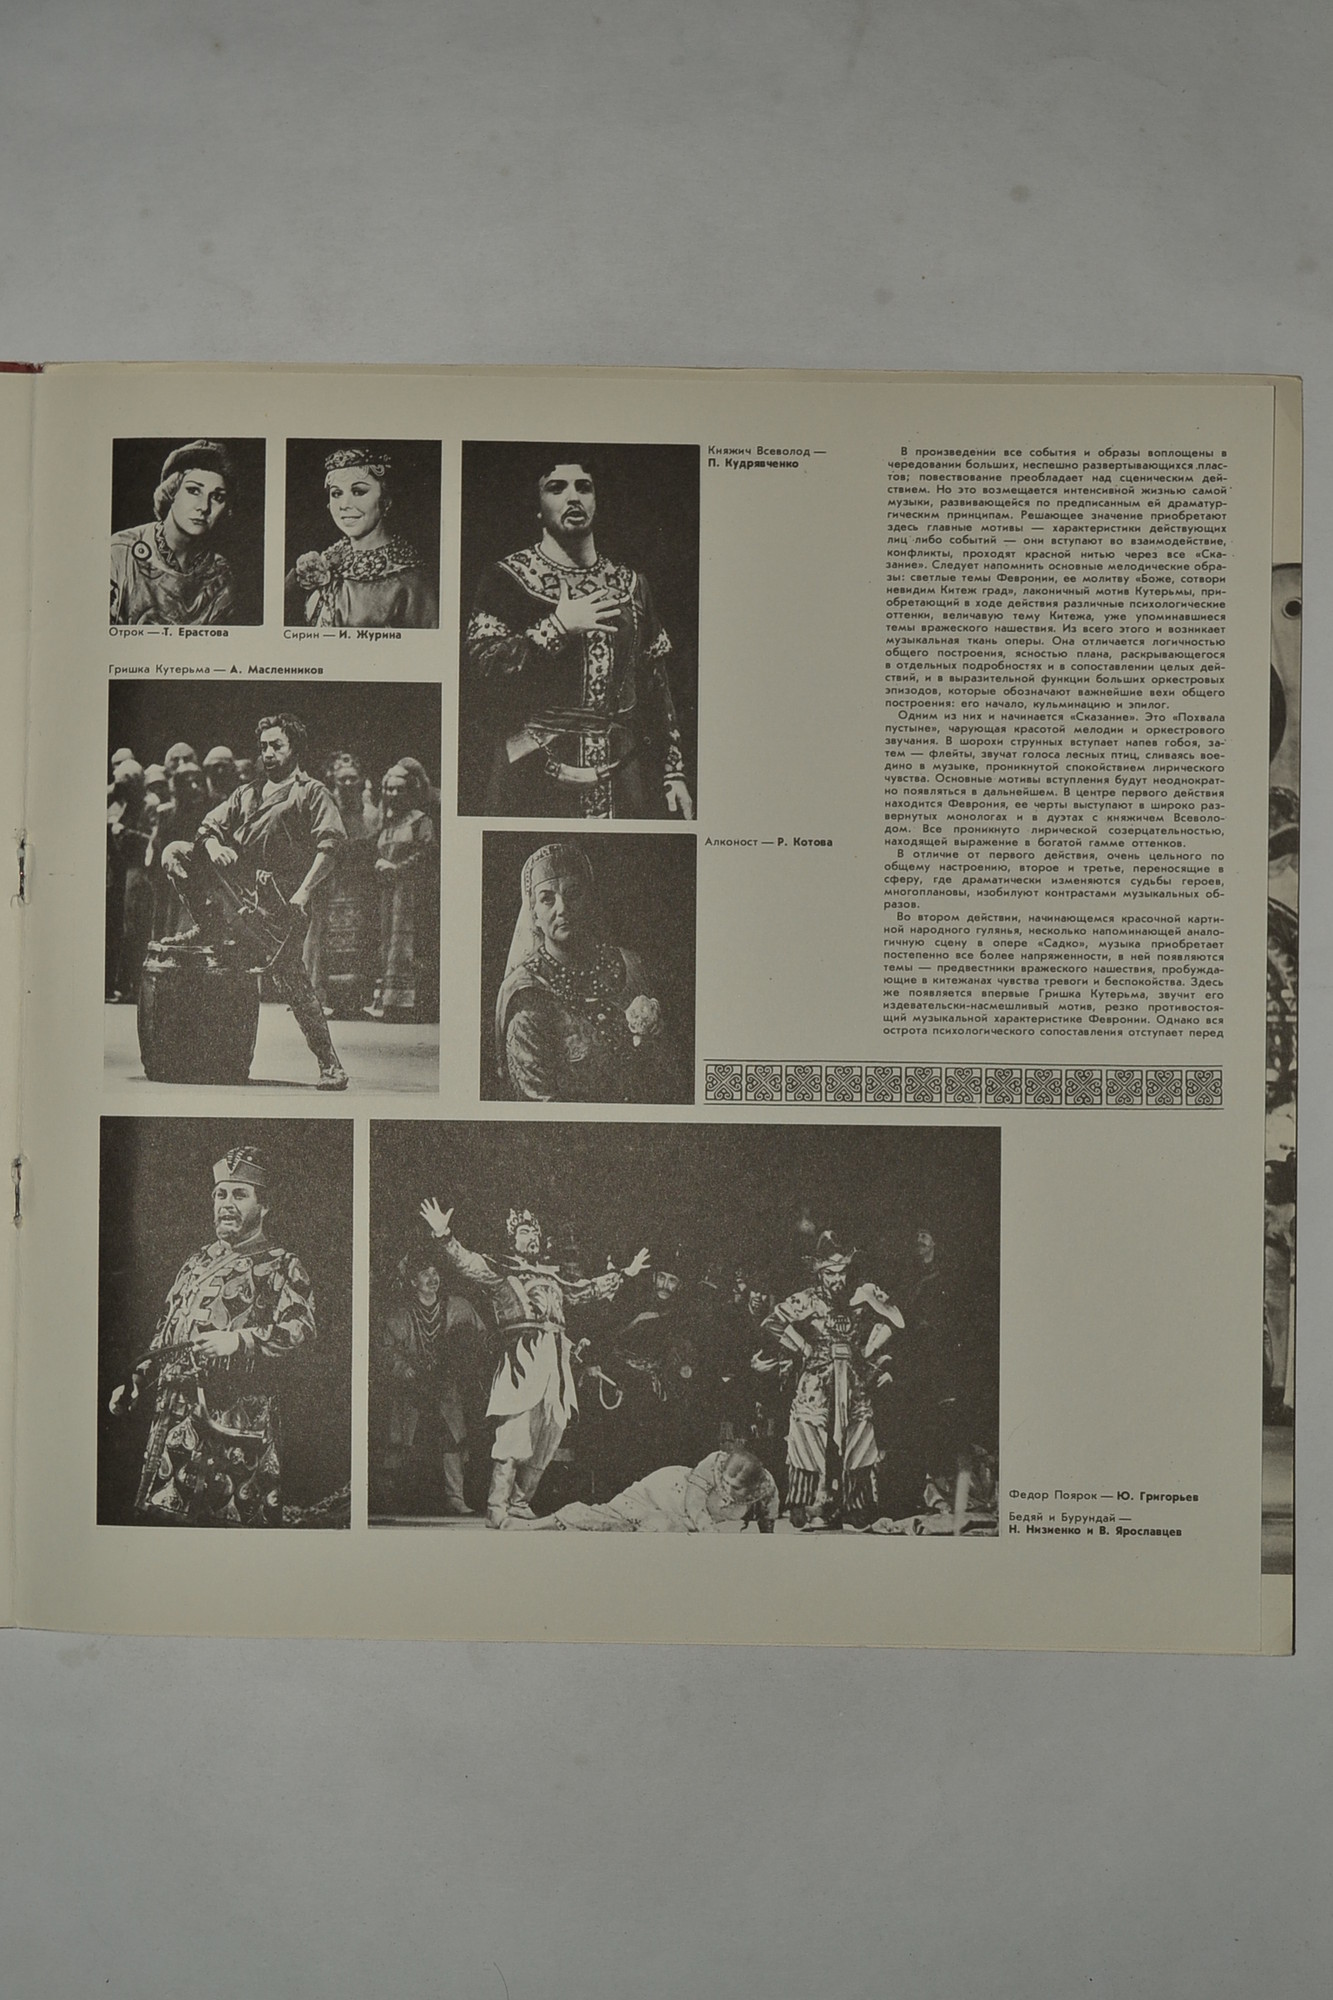 Н. РИМСКИЙ-КОРСАКОВ (1844-1908): «Сказание о невидимом граде Китеже и деве Февронии», опера в четырех действиях.